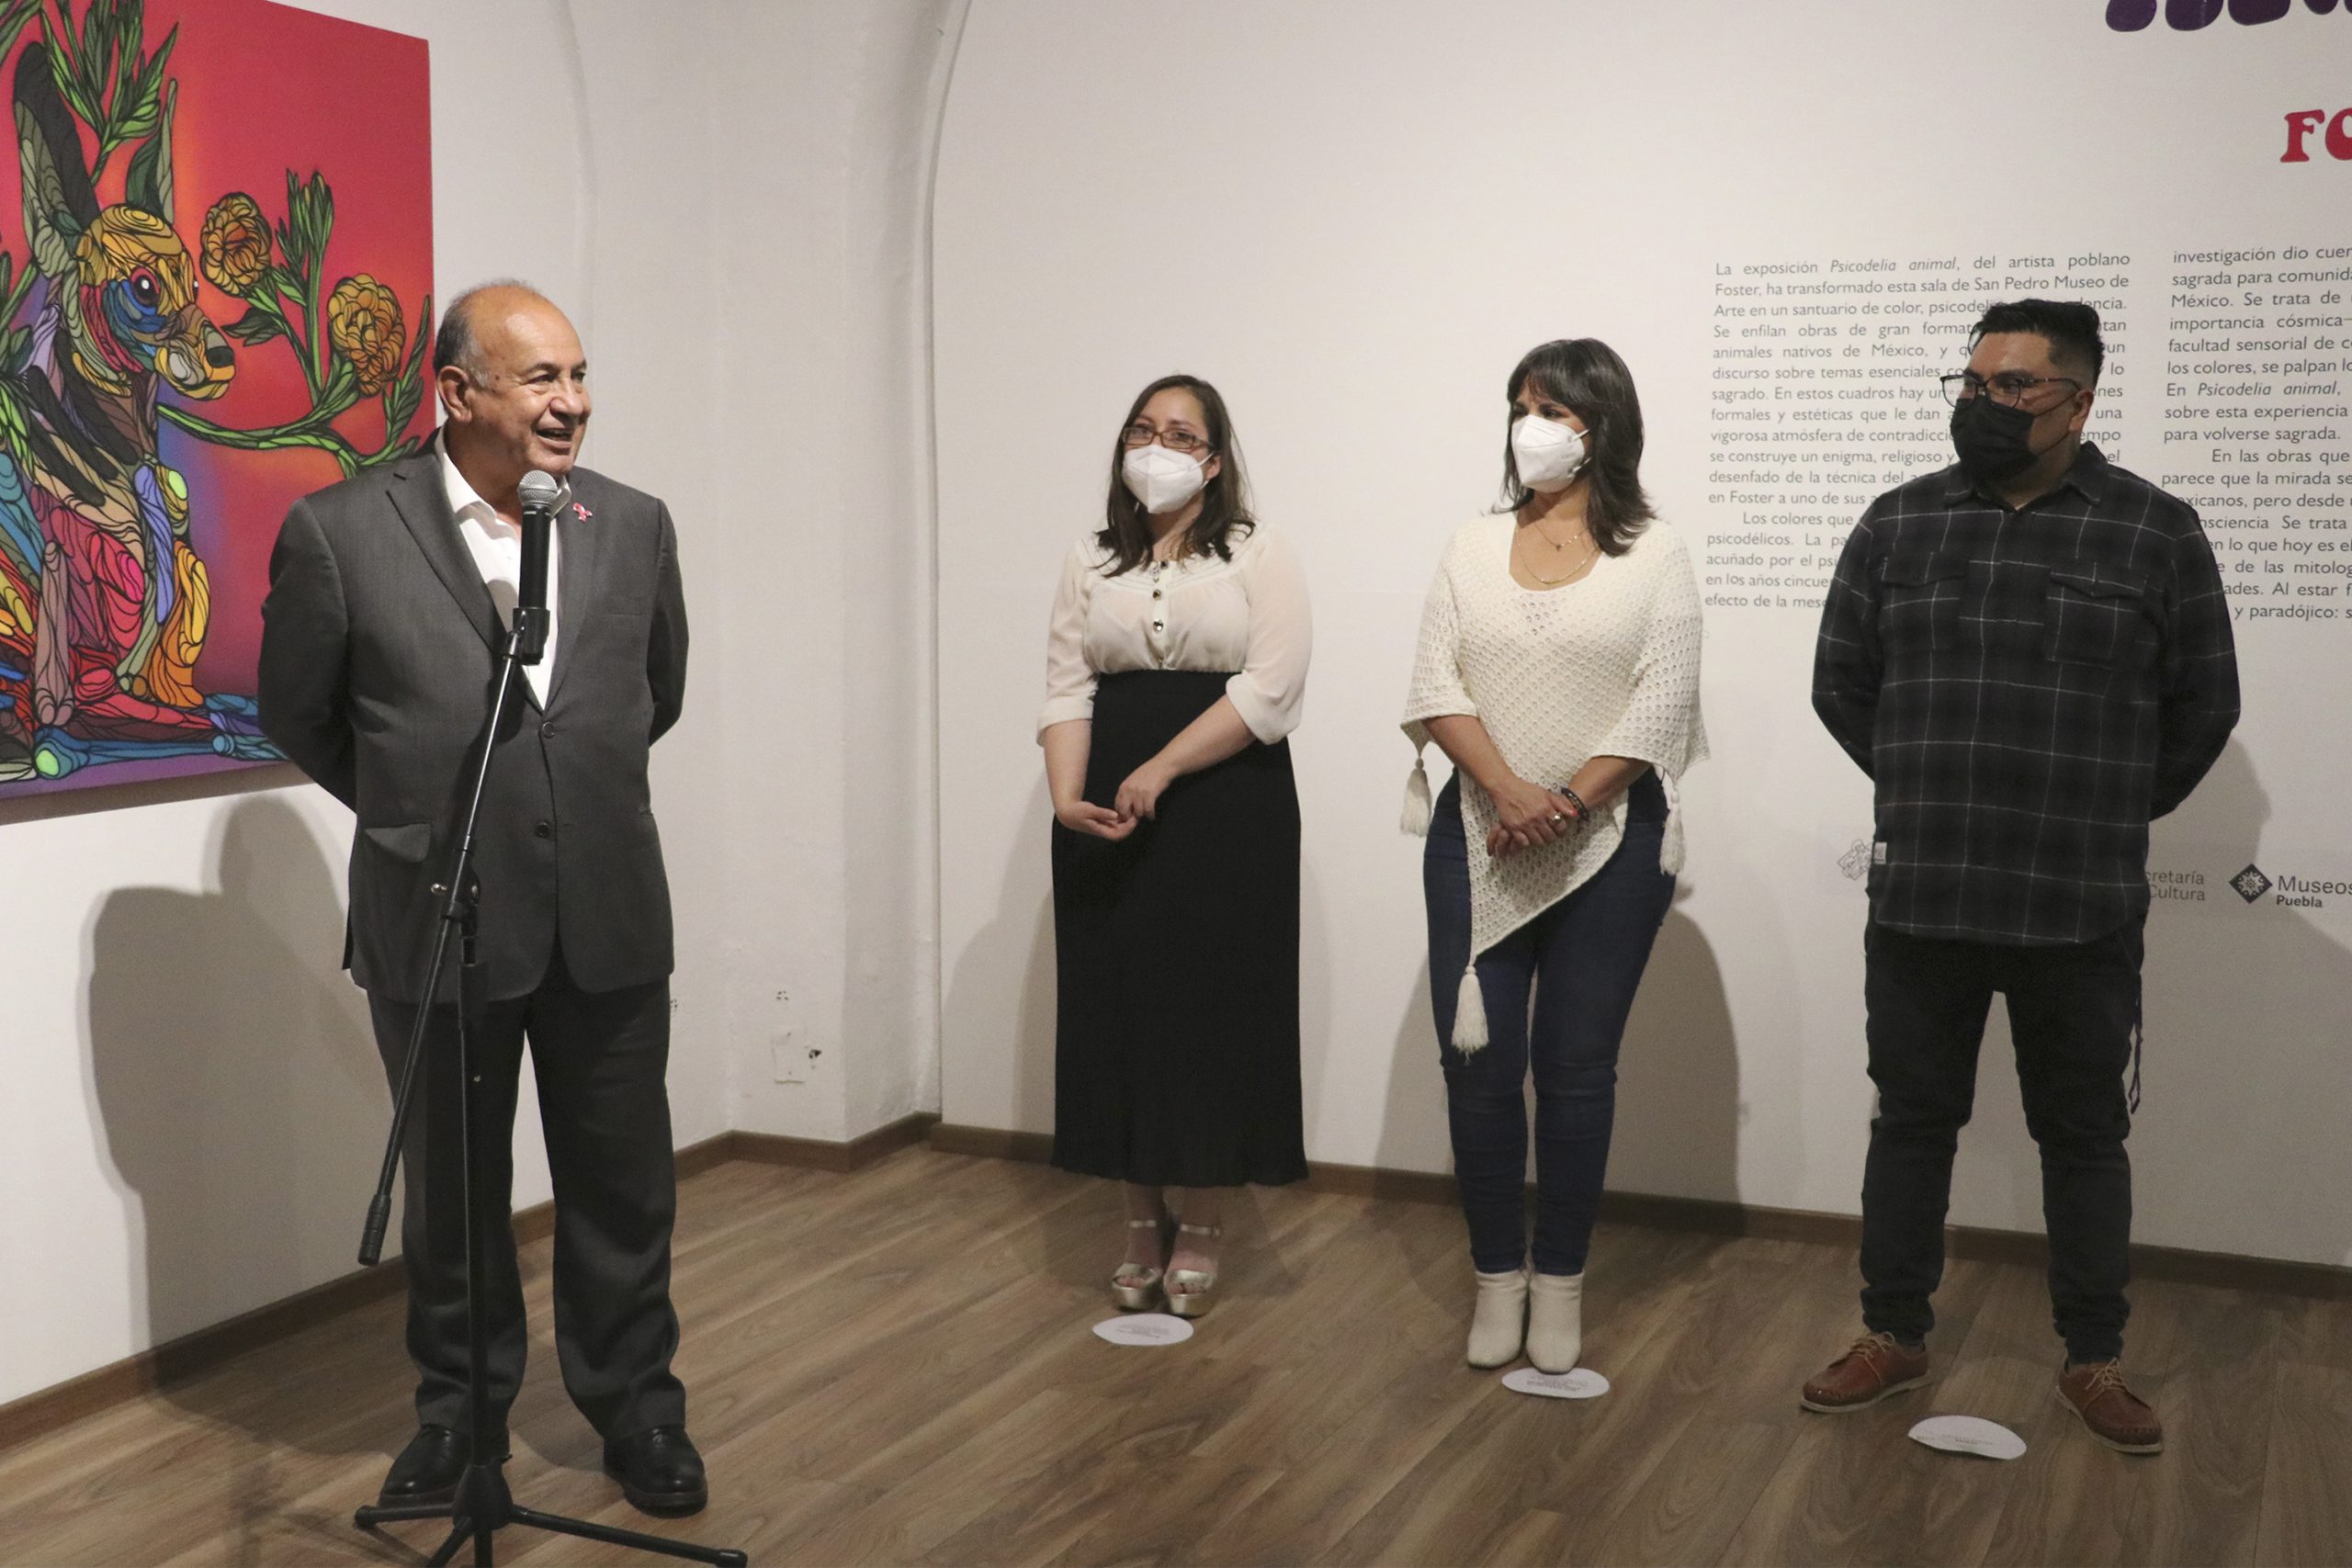 En San Pedro Museo de Arte, Cultura inaugura exposición “Psicodelia Animal”